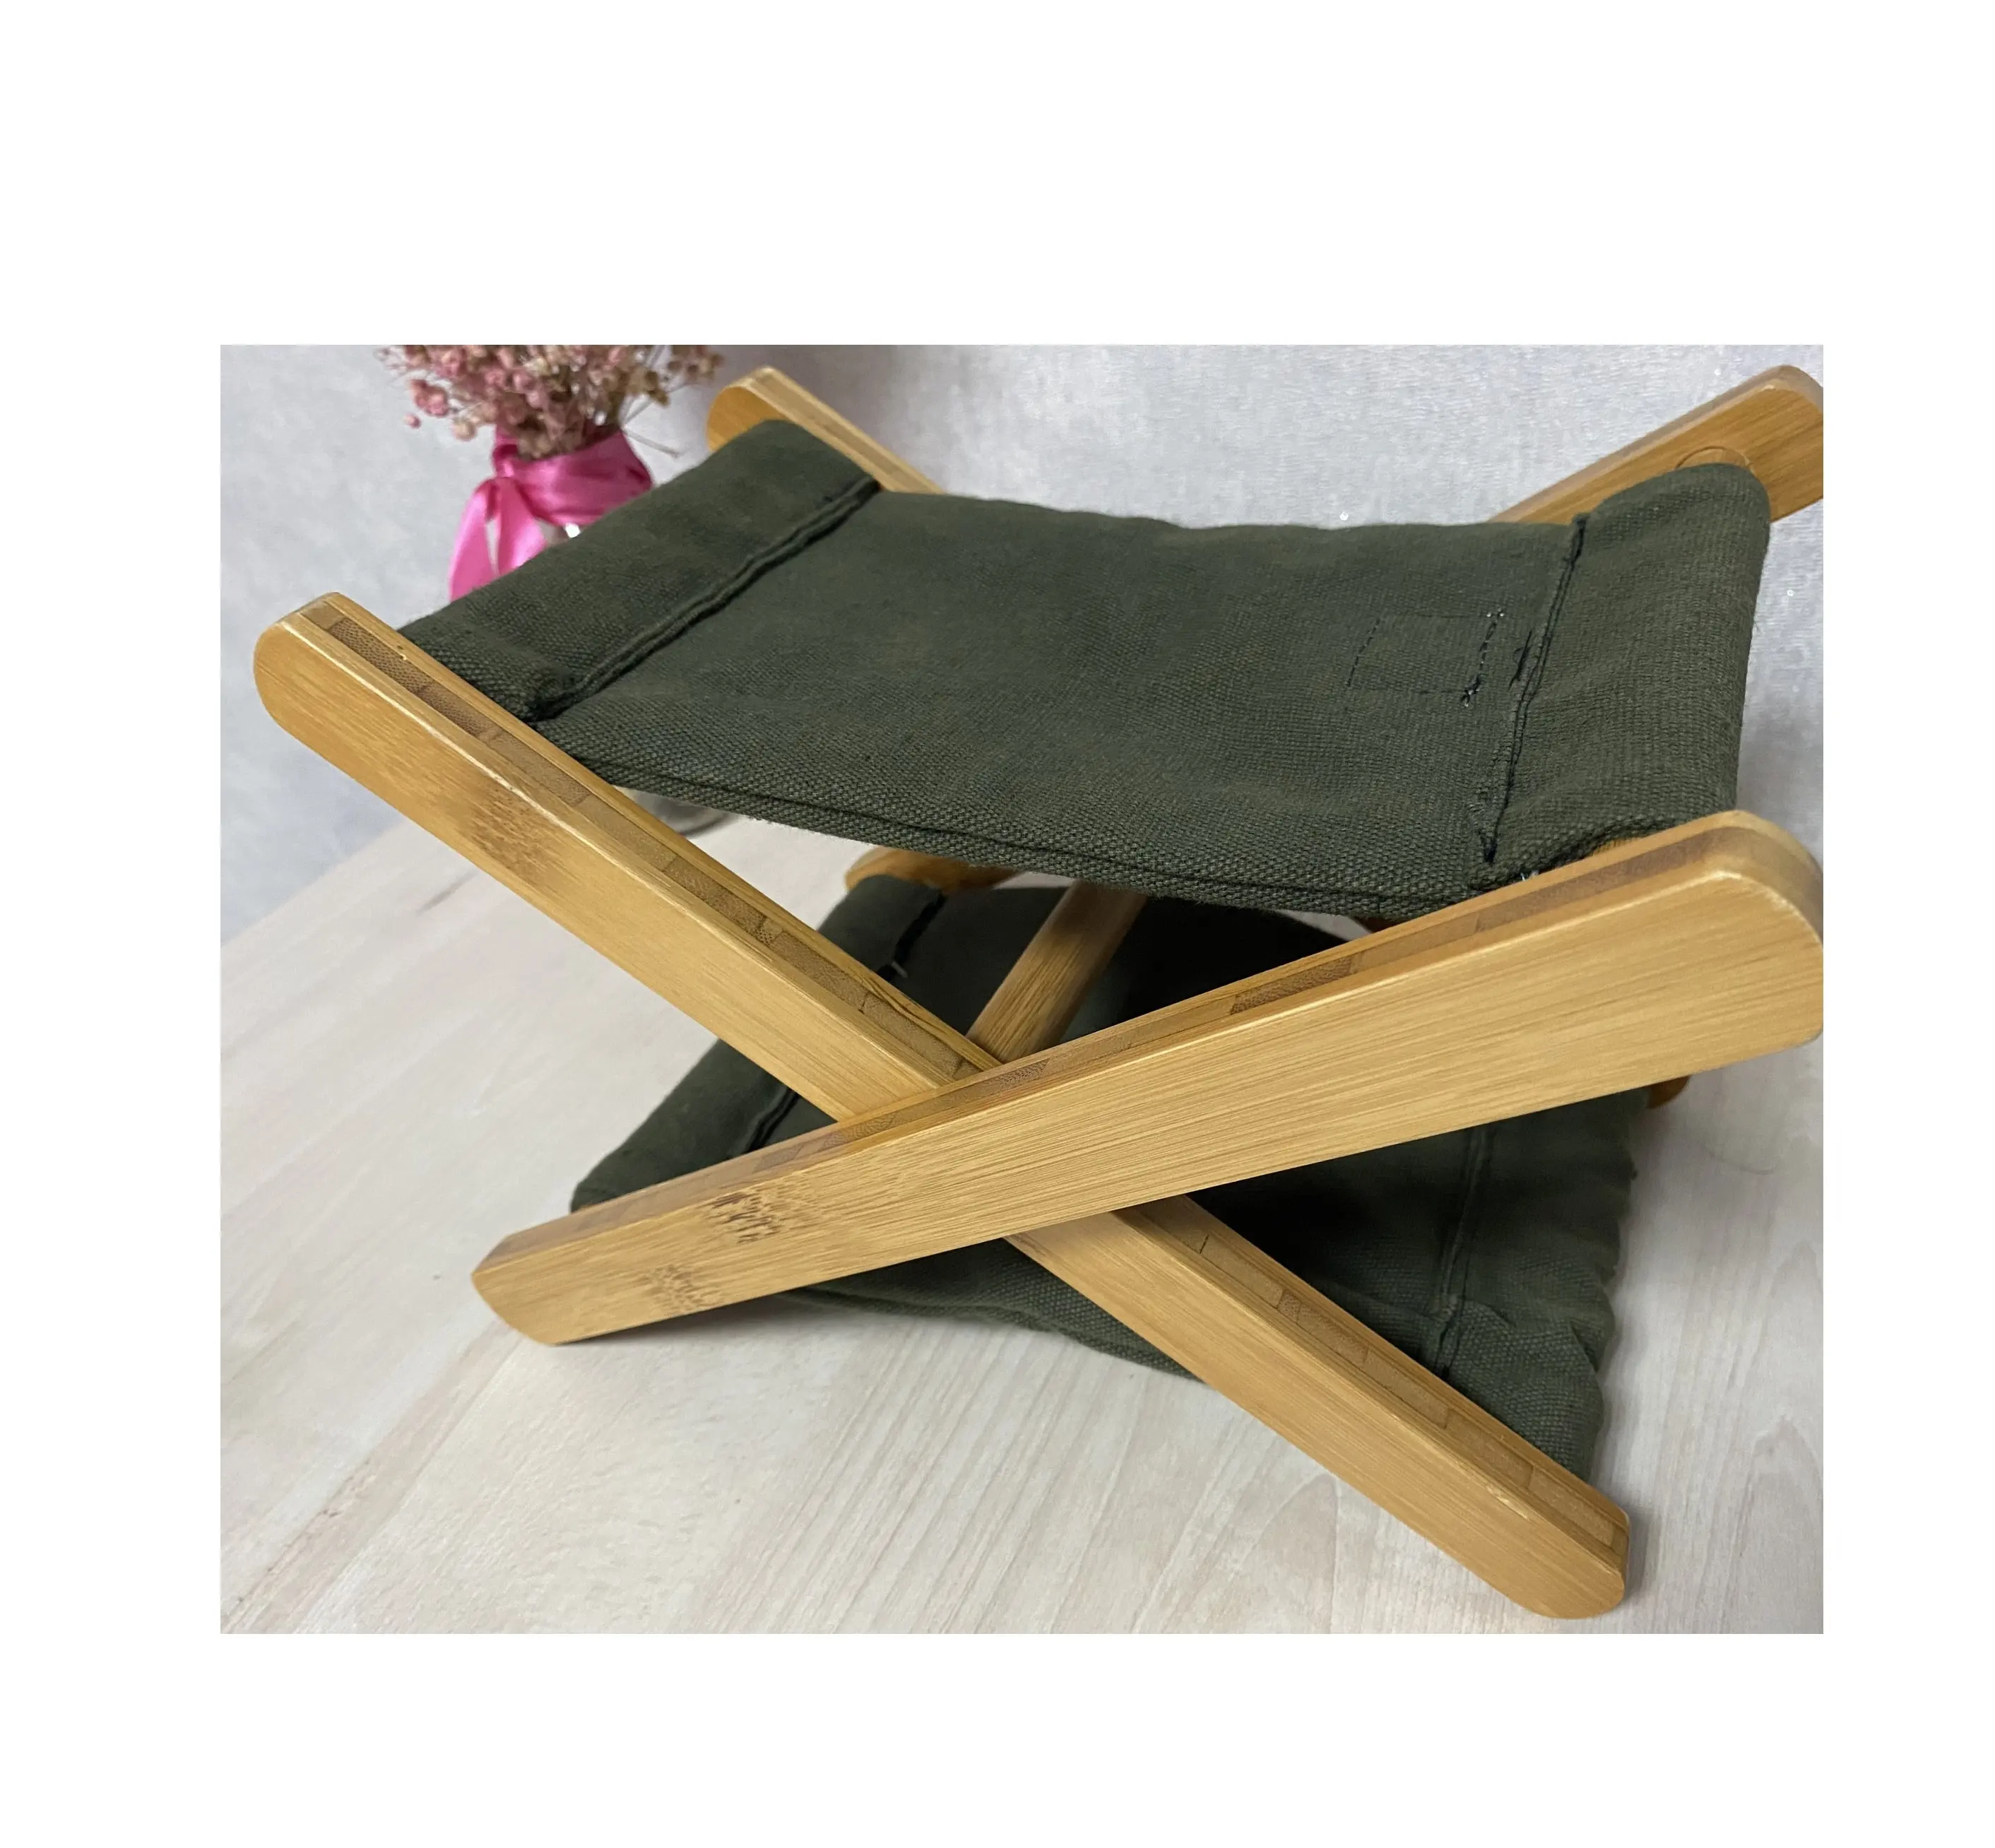 Poggiatesta in legno tropicale di bambù per sedie a sdraio legno moderno mobili da esterno decorazione giardino